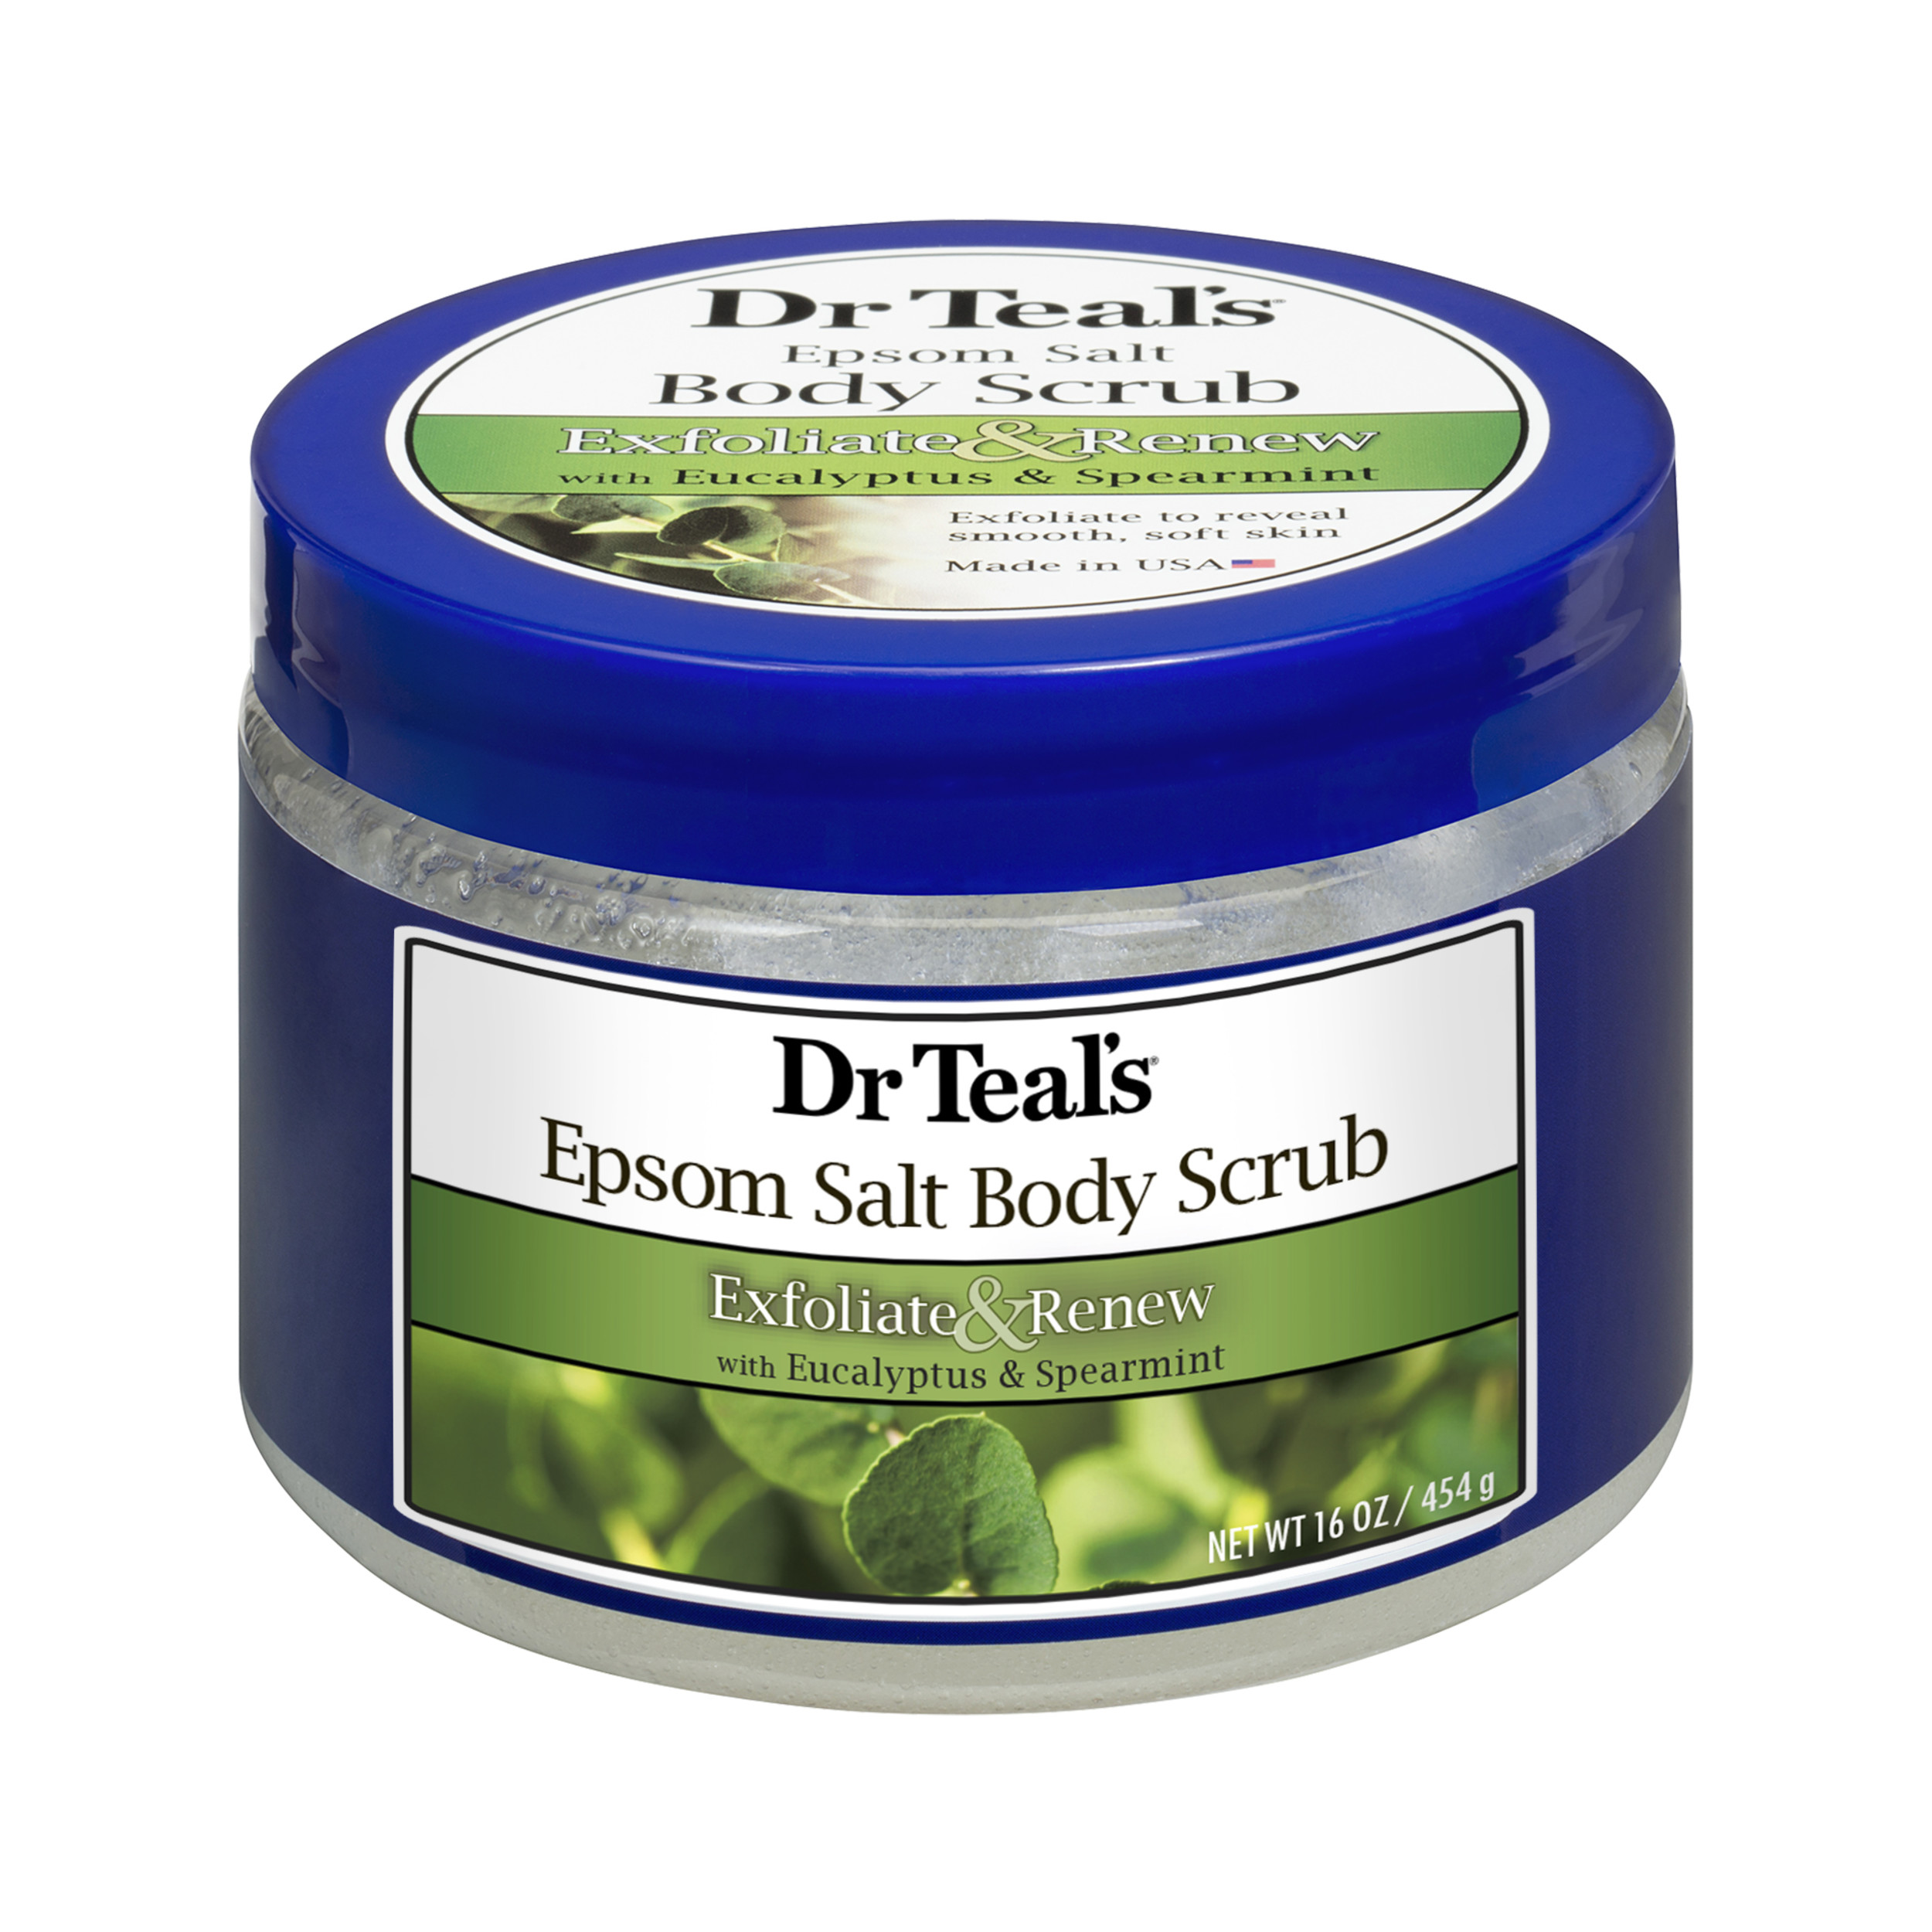 Dr Teal's Exfoliate & Renew with Eucalyptus & Spearmint Epsom Salt Body Scrub, 16 oz - image 1 of 2